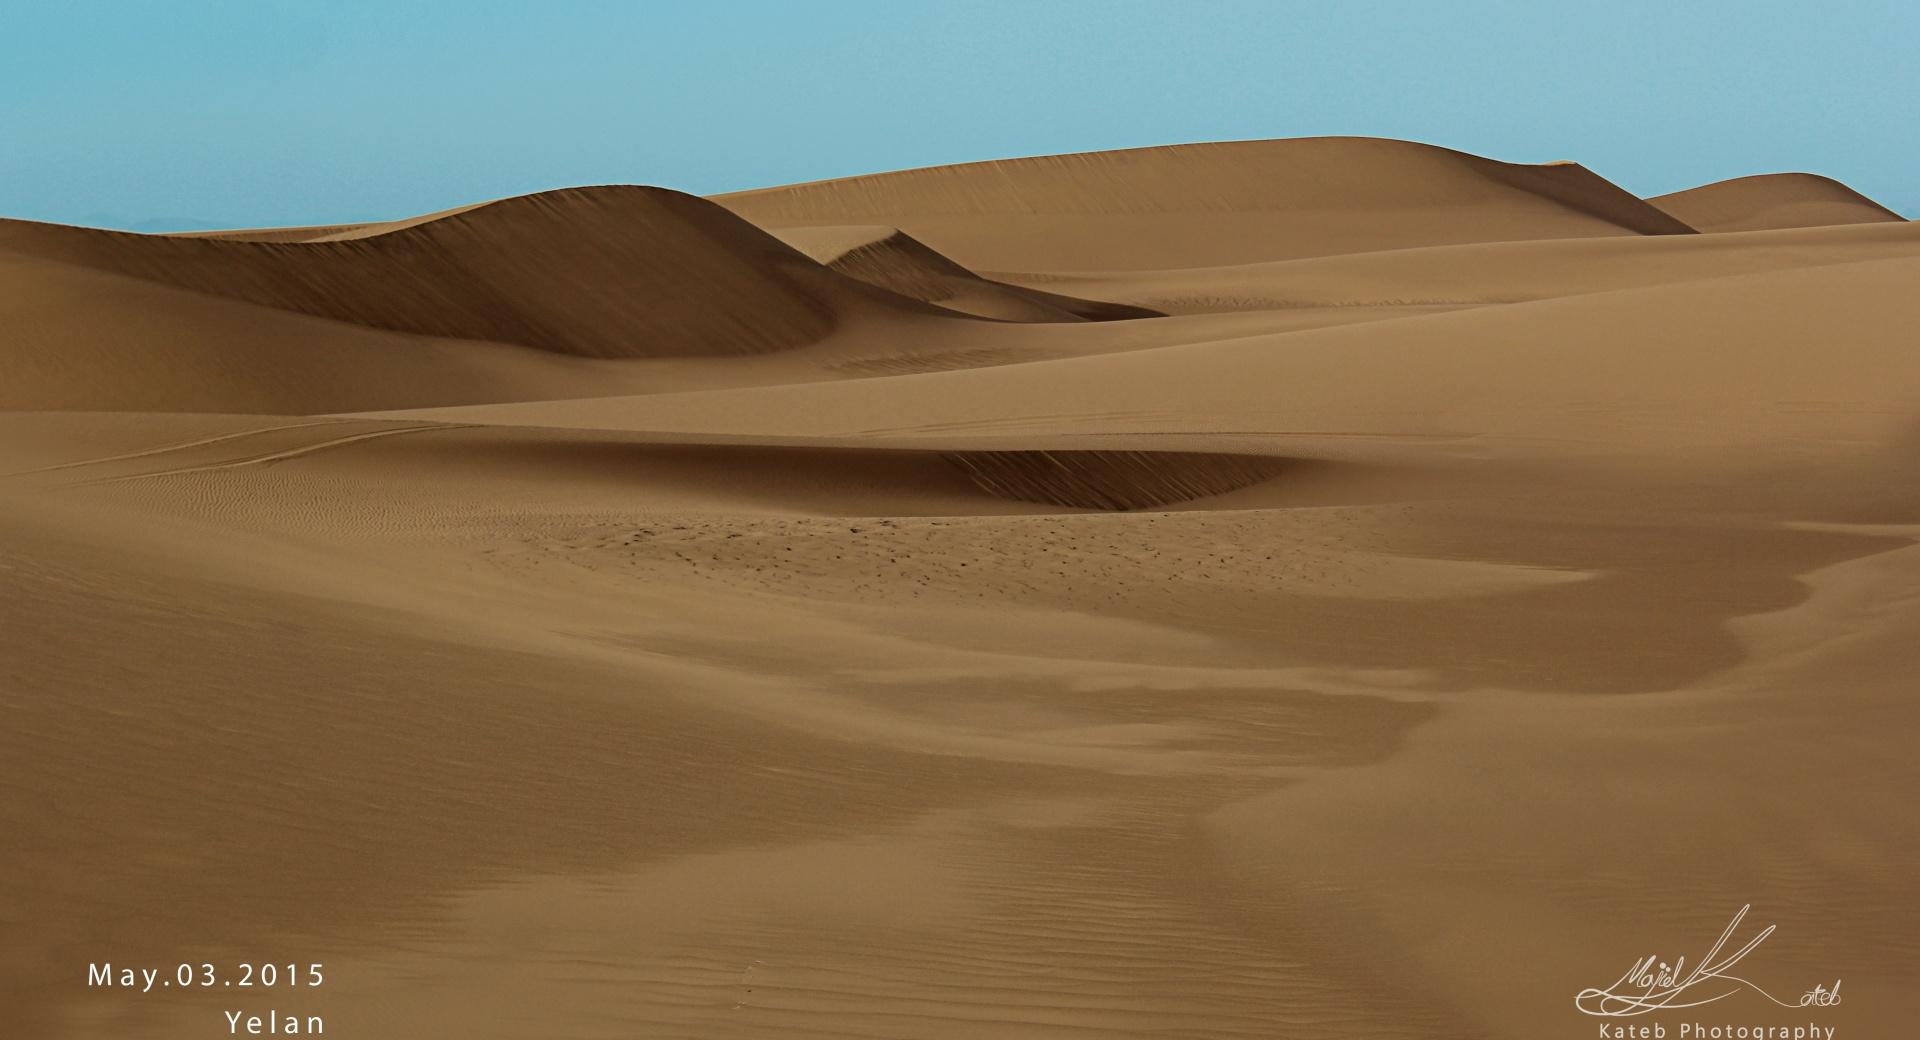 Desert Yelan - Iran at 1024 x 768 size wallpapers HD quality